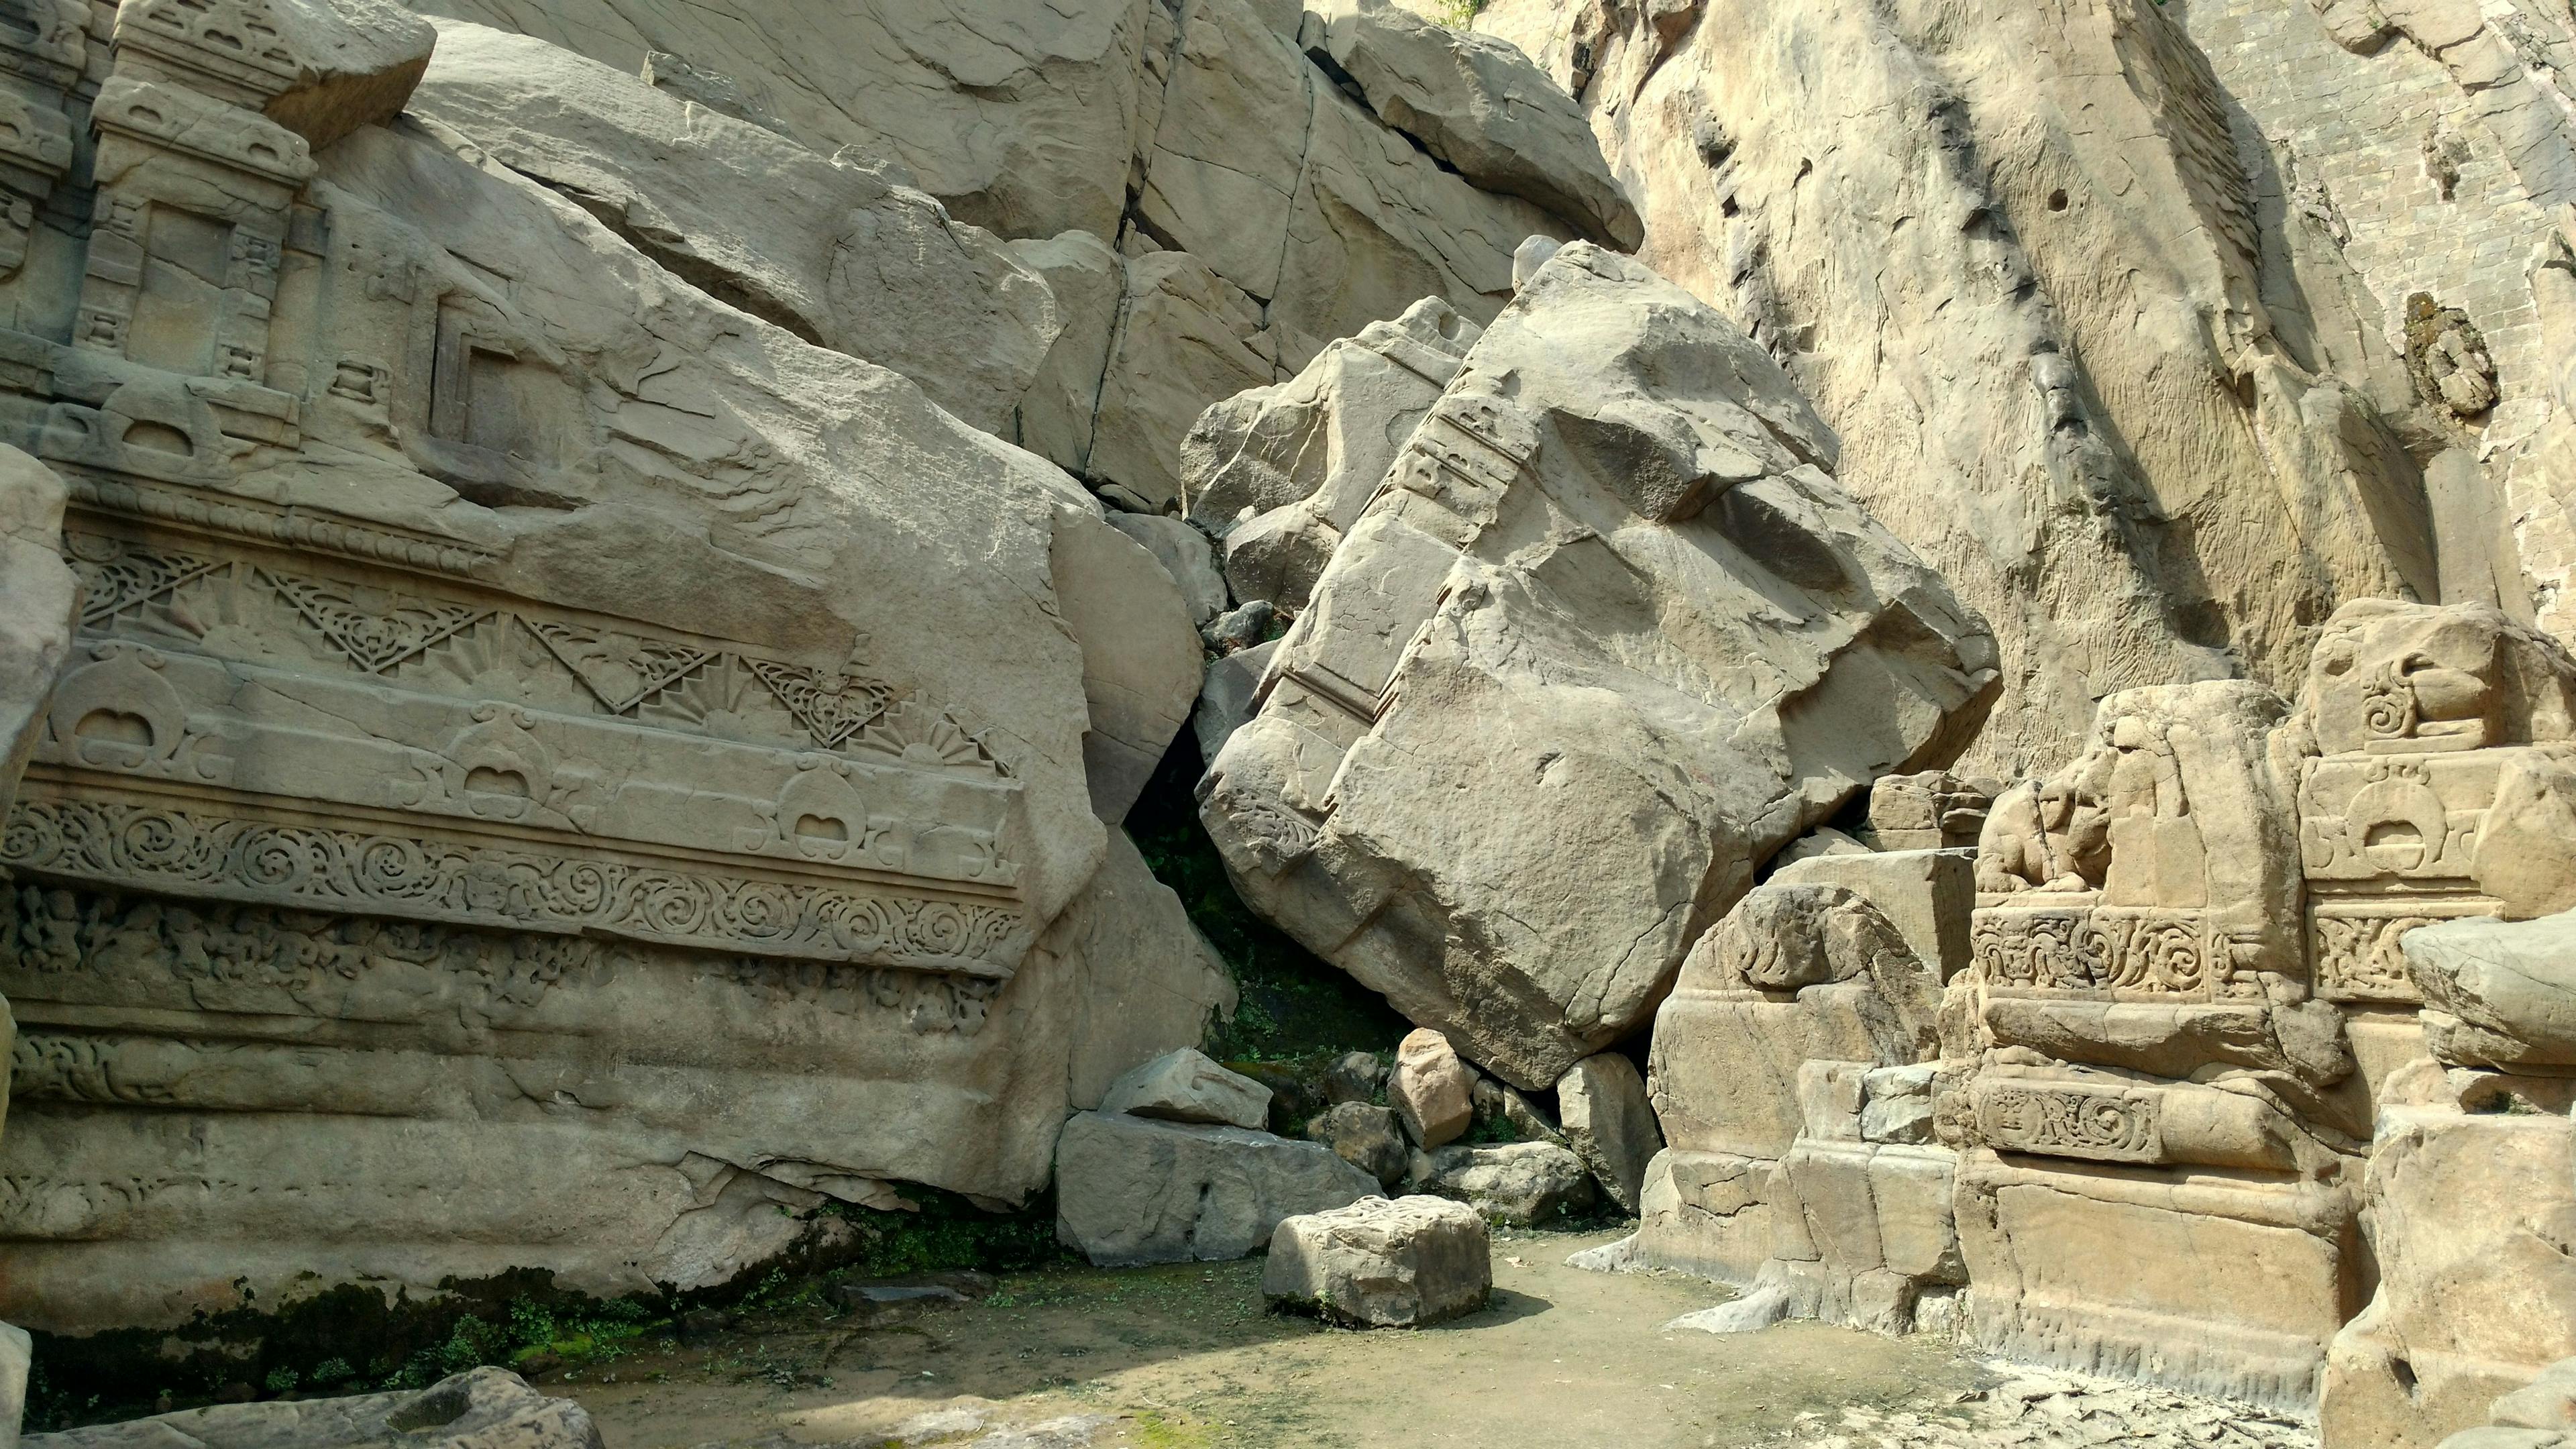 The ruin of the Masrur temple complex